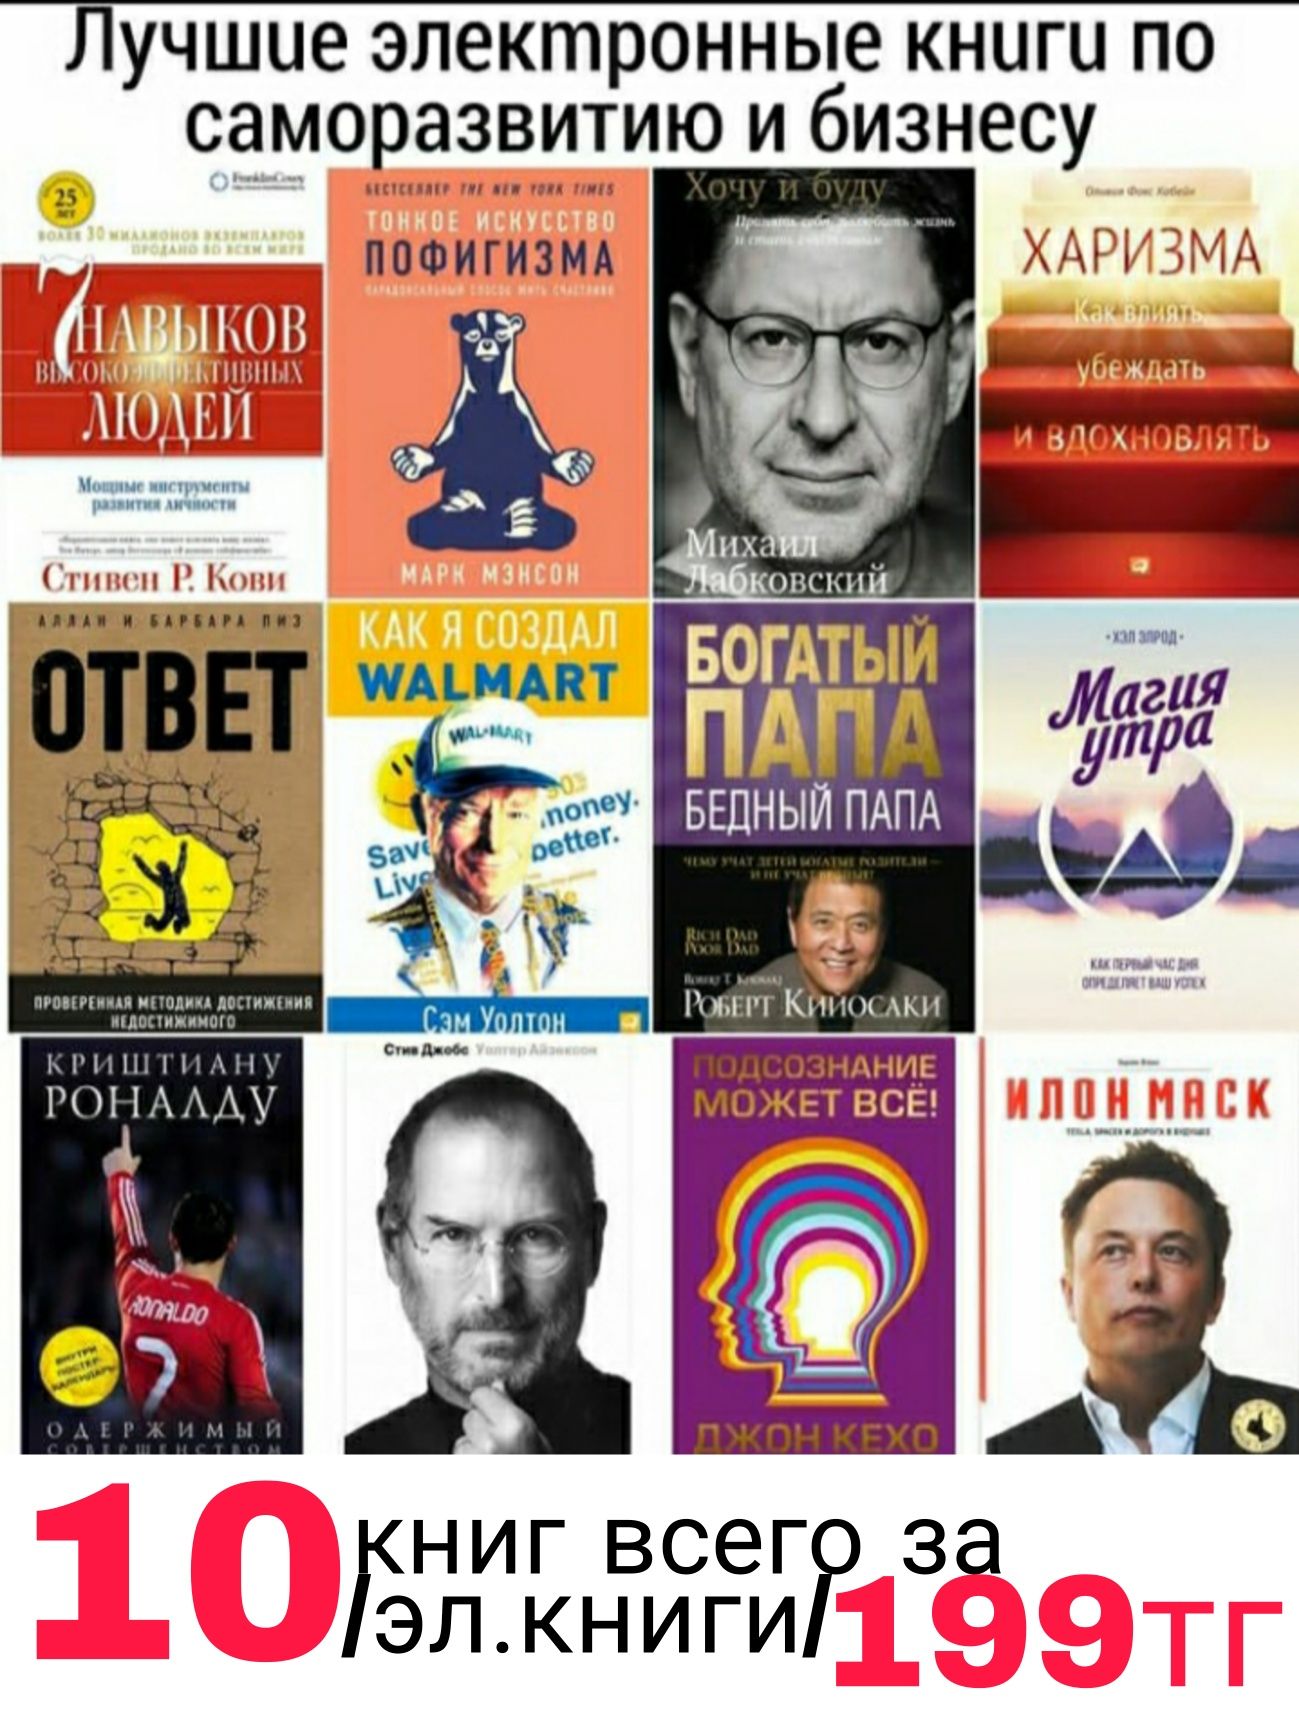 10 электронных книг по выгодной цене